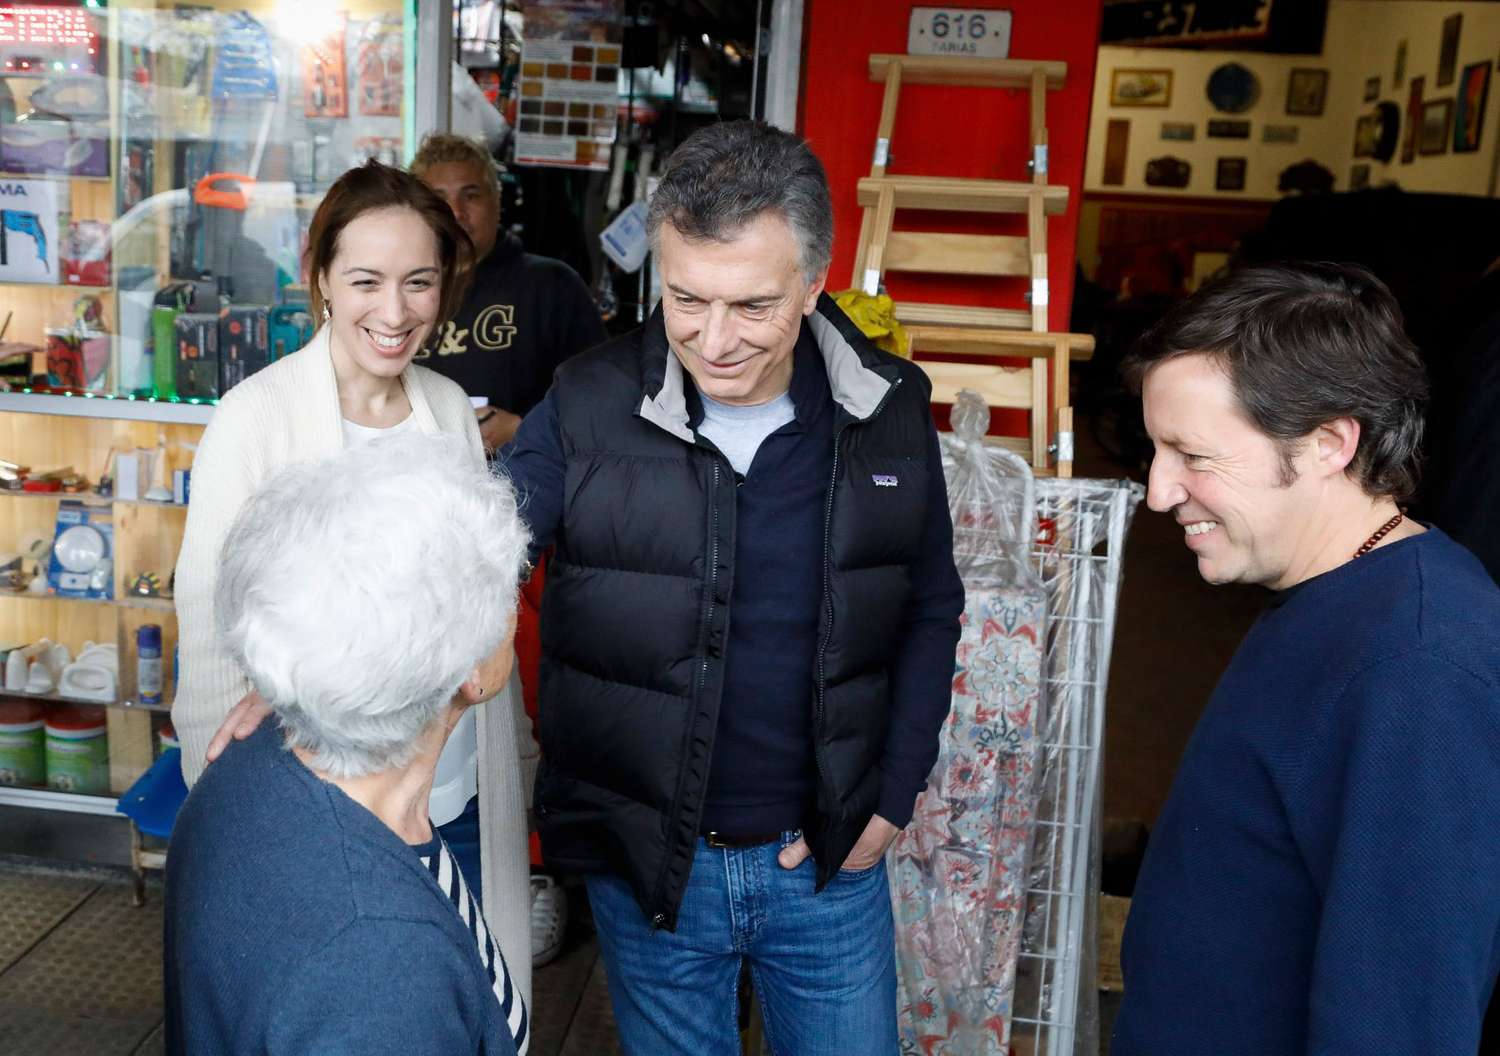 La Gobernadora apoyó la reelección de Macri pero pidió evitar temas electorales